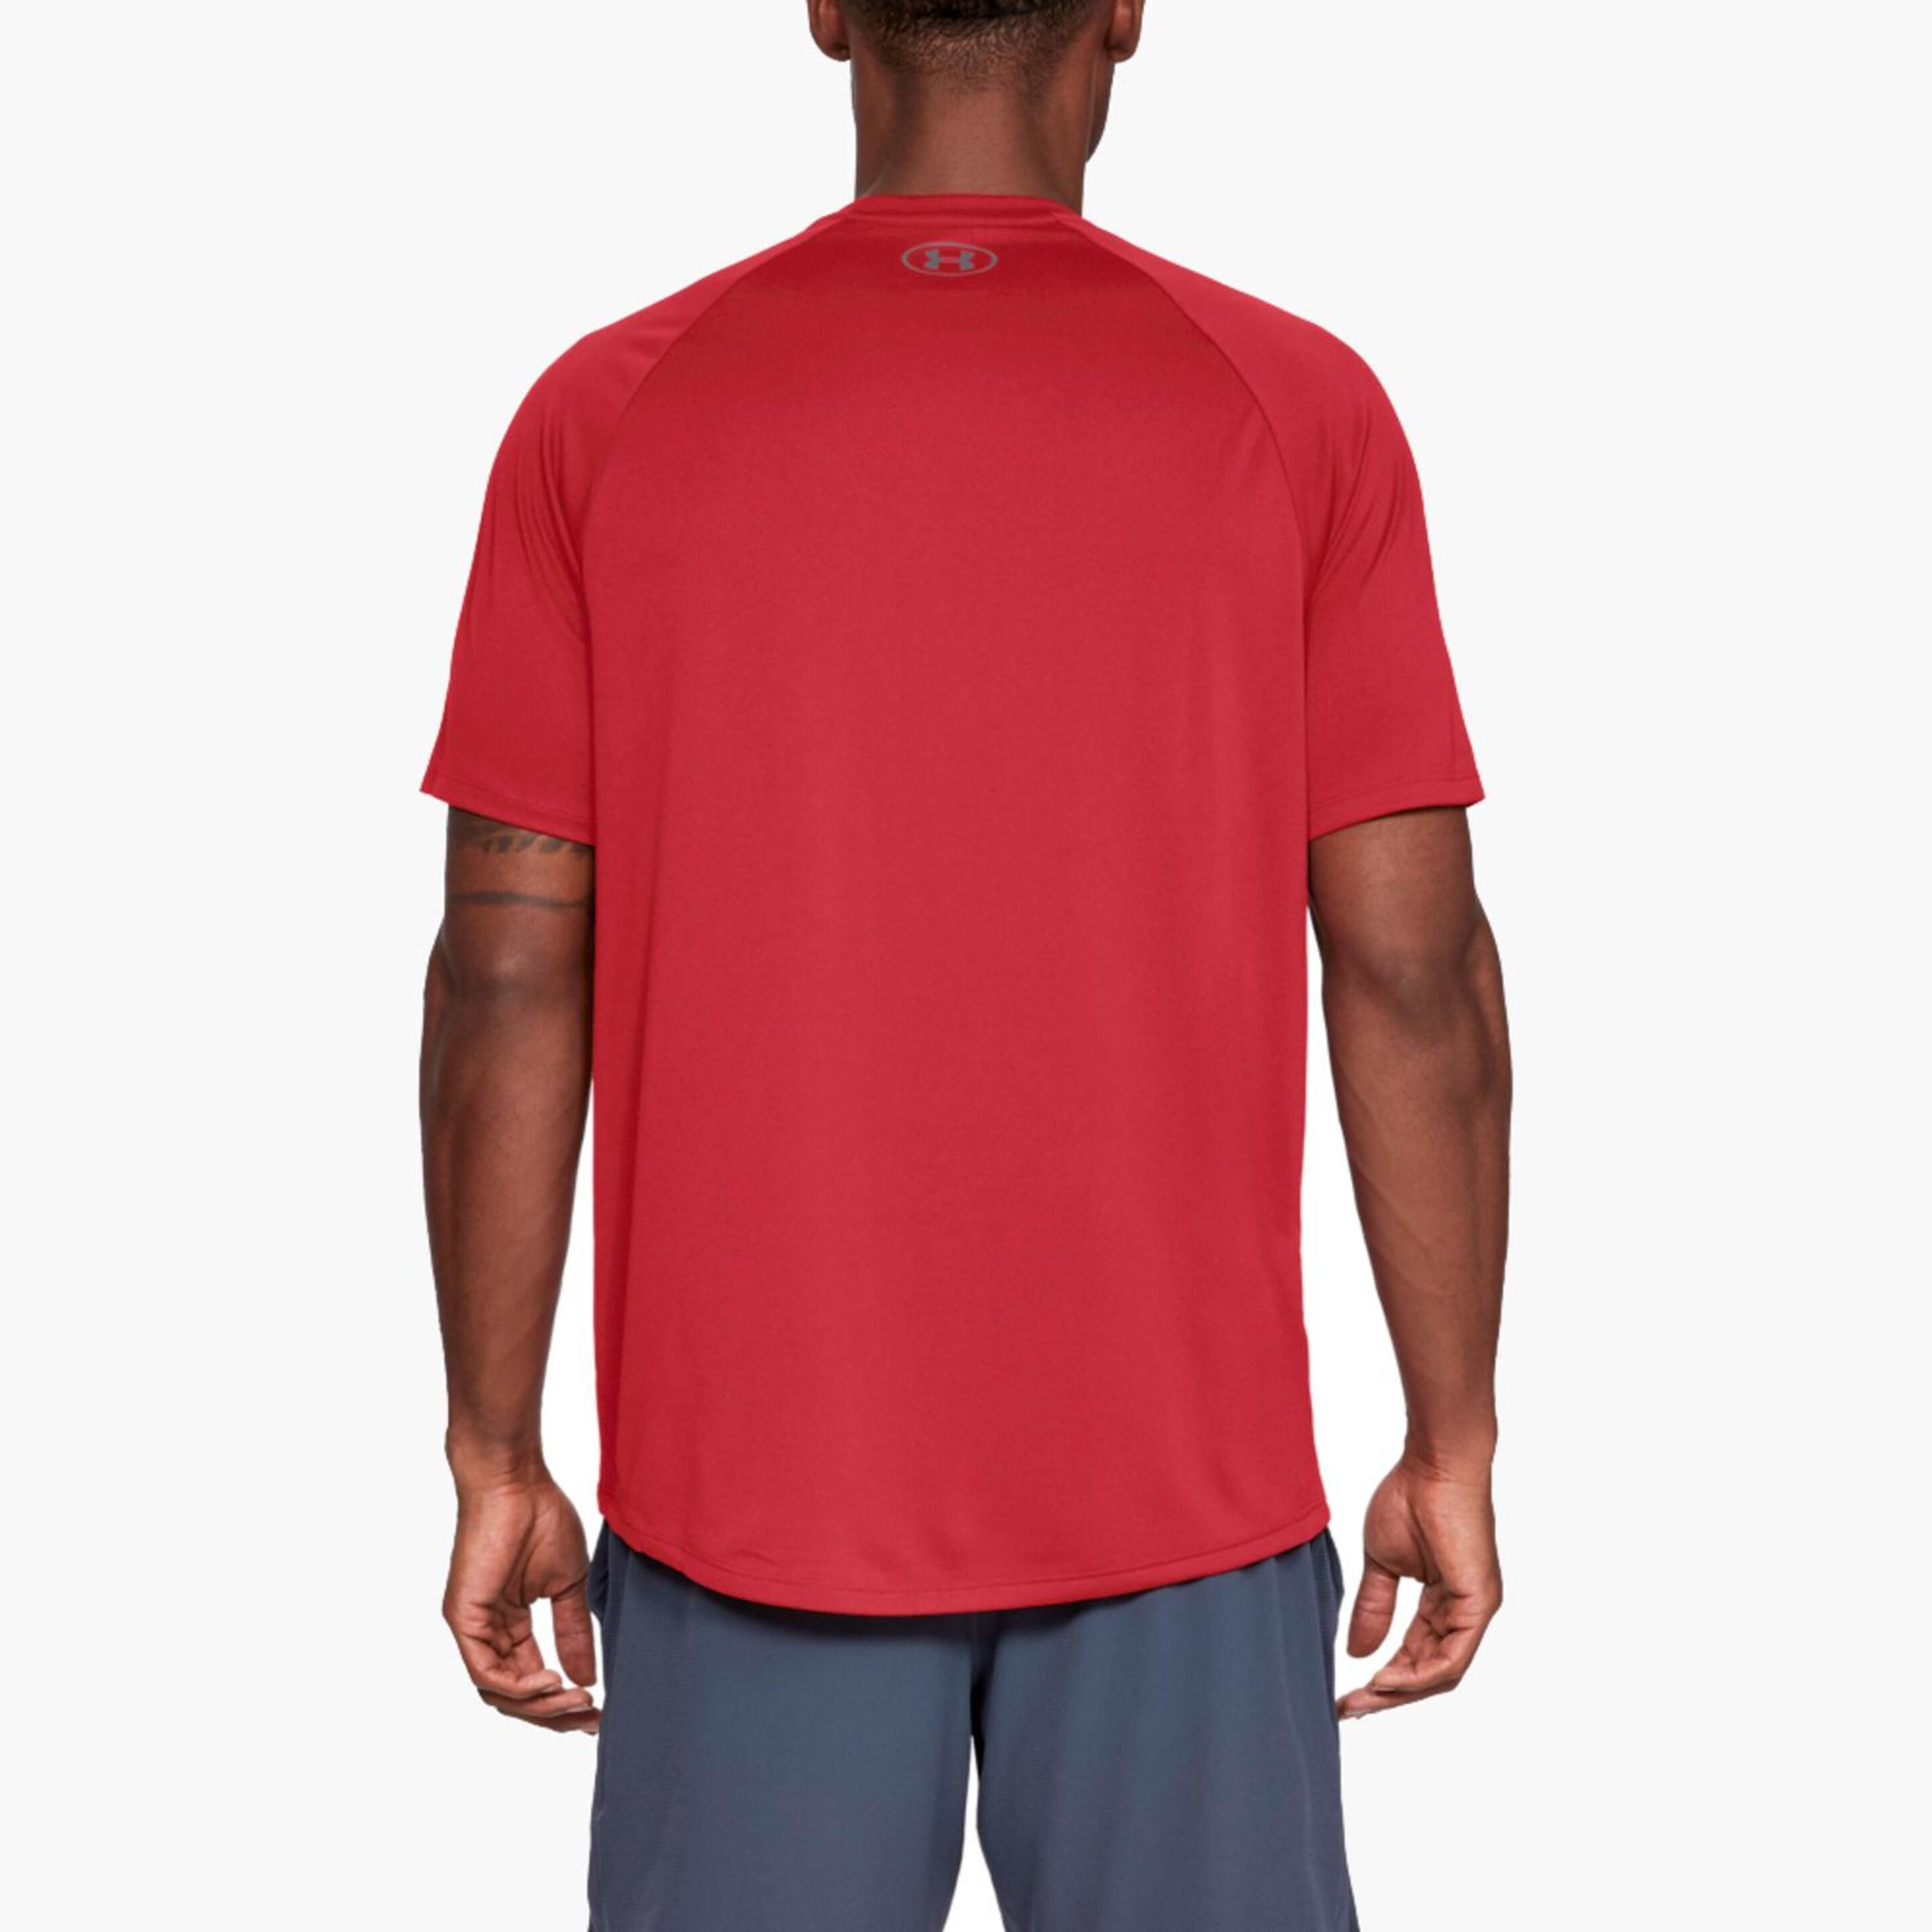 Under Armour Tech - Rojo - Camiseta Running Hombre  MKP